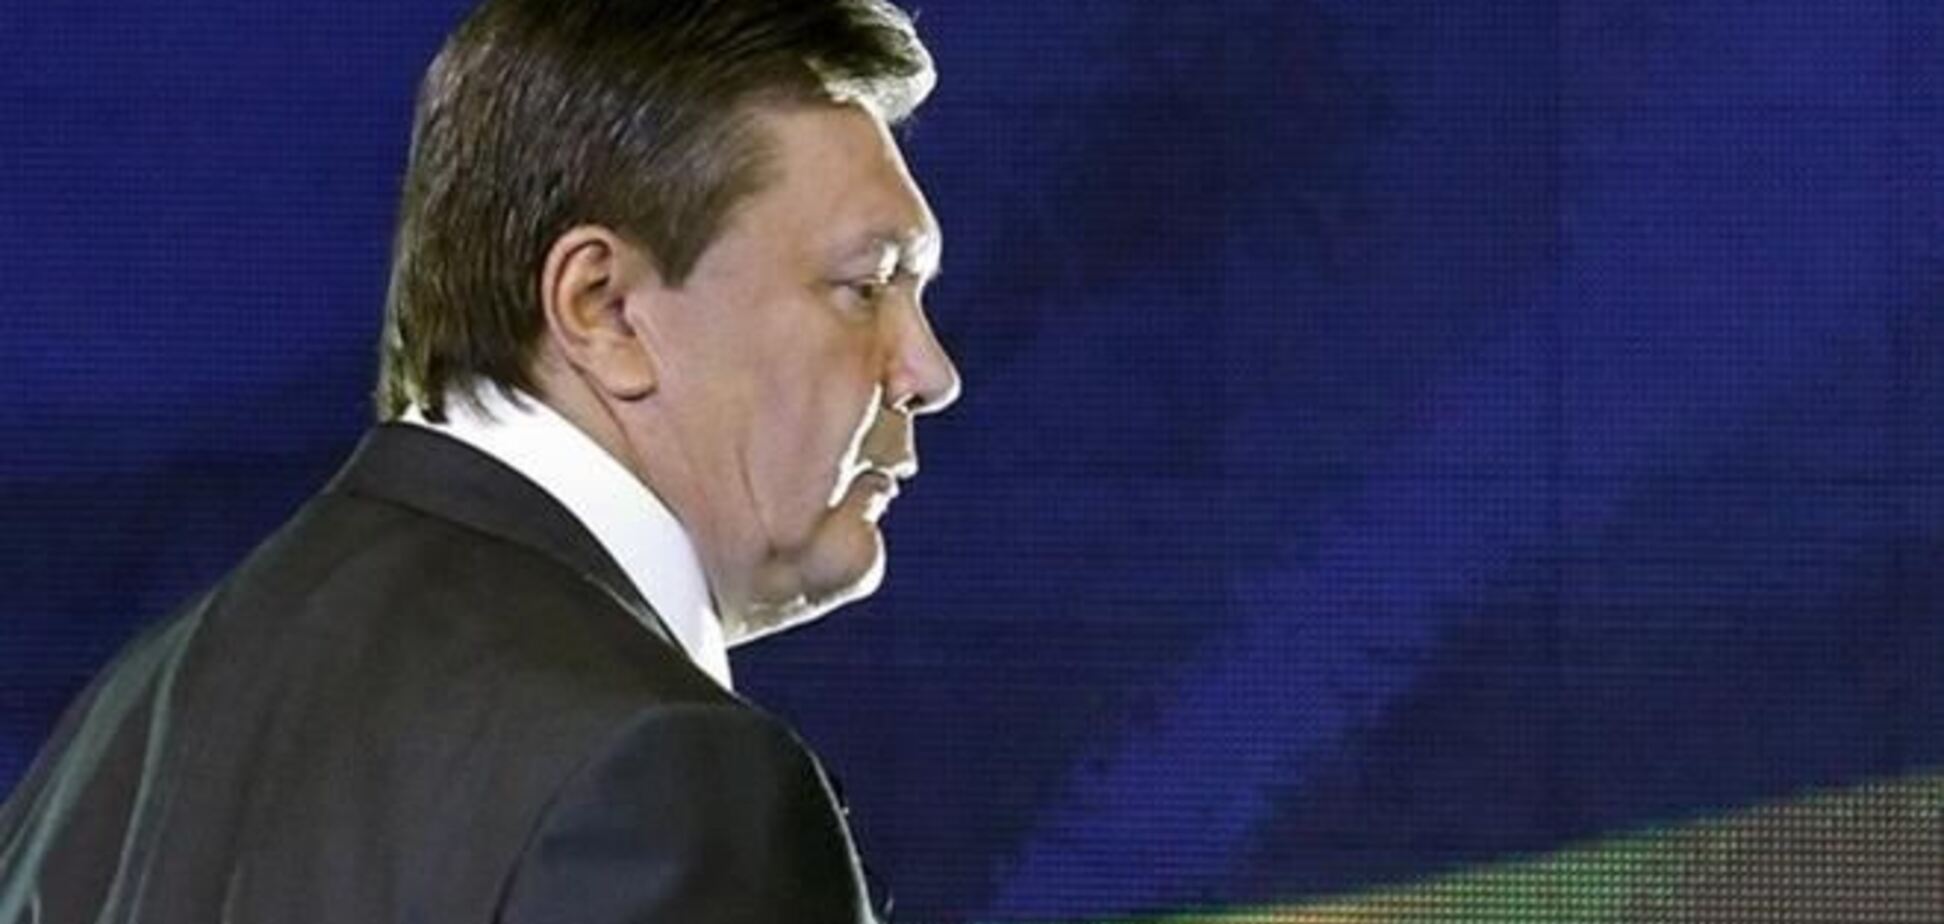 ГПУ считает заявление Януковича провокацией, направленной на поддержку сепаратизма